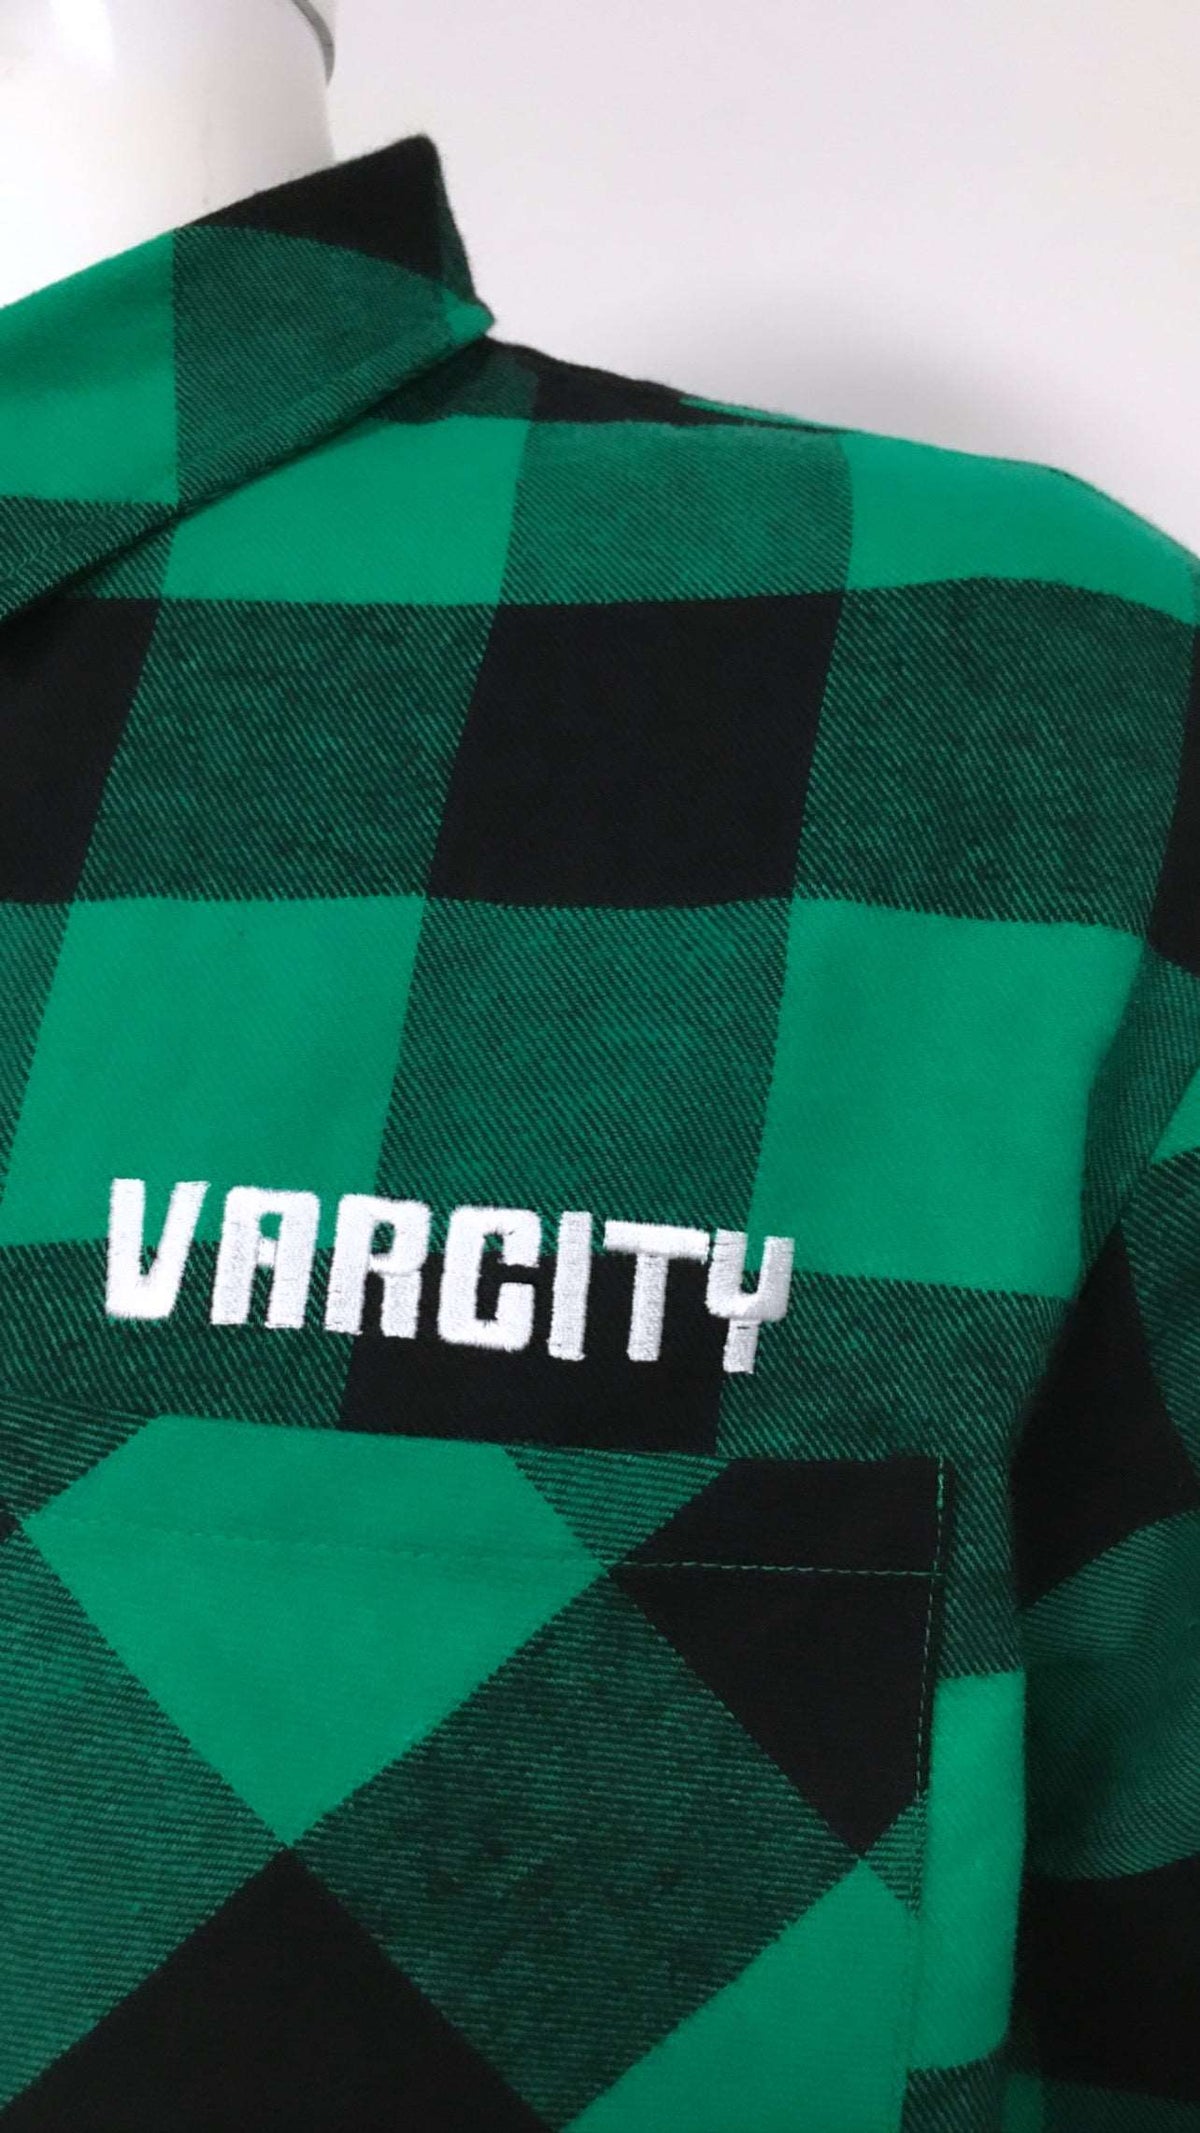 varcityunltd statement check flannel makes